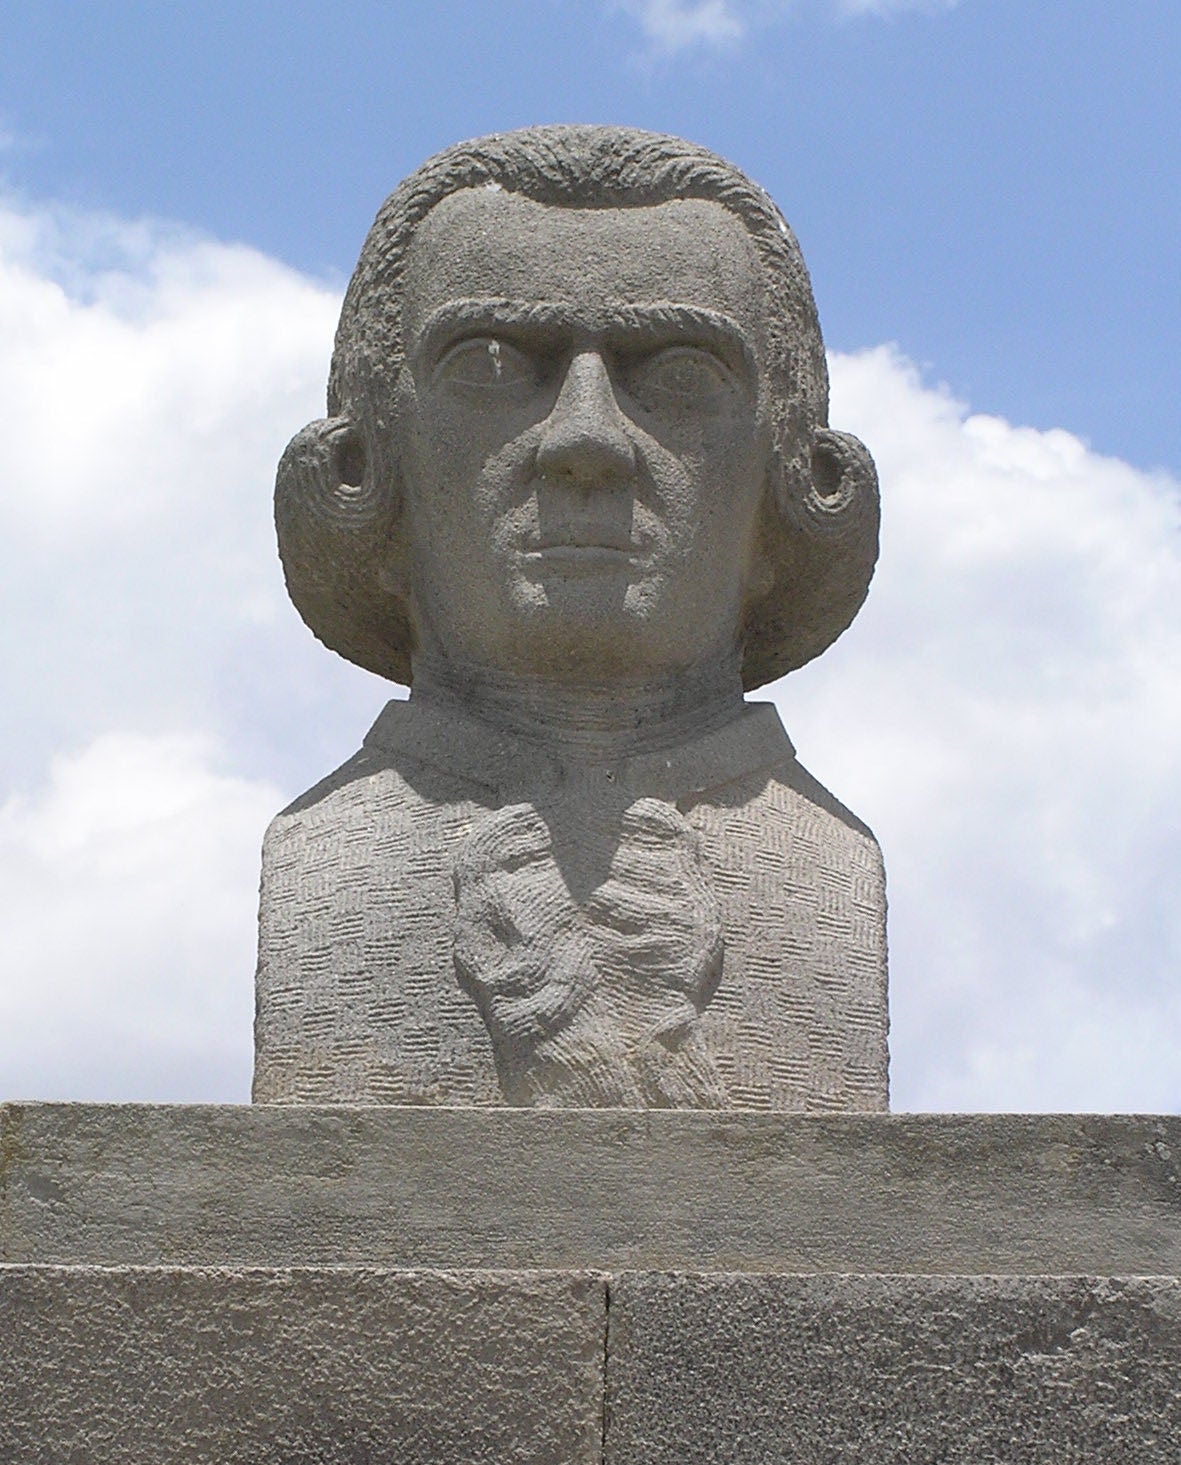 a statue of Don Antonio de Ulloa